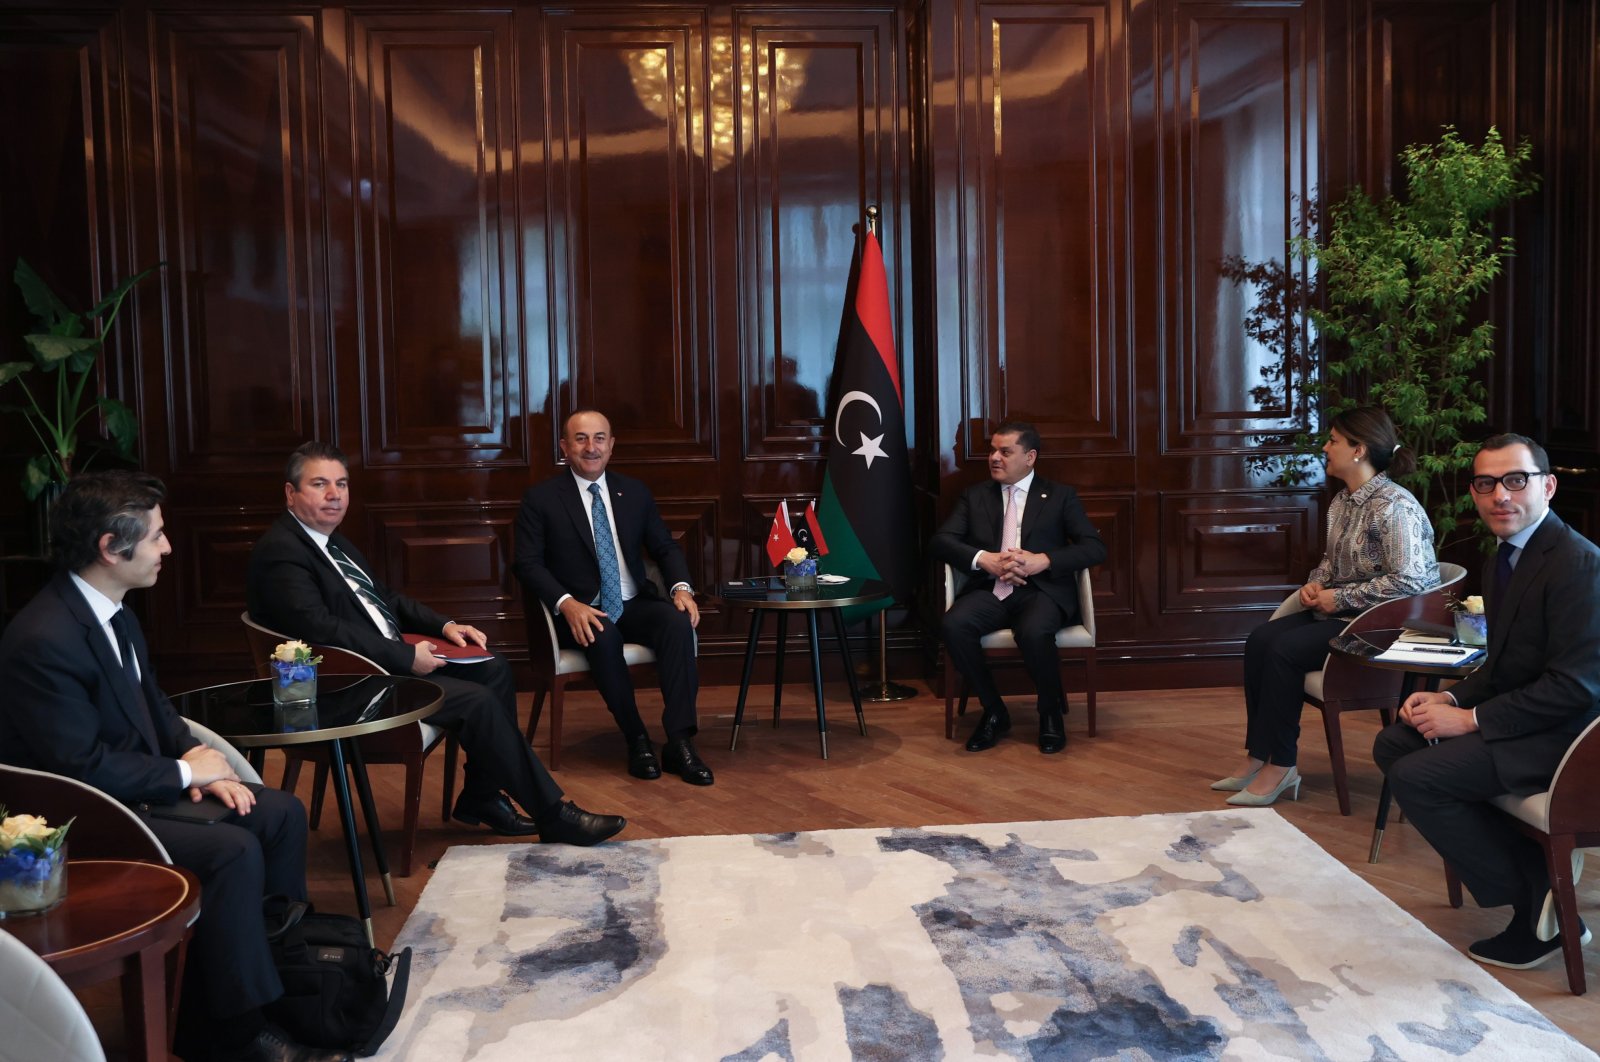 Libya's peace progress in the Berlin talks